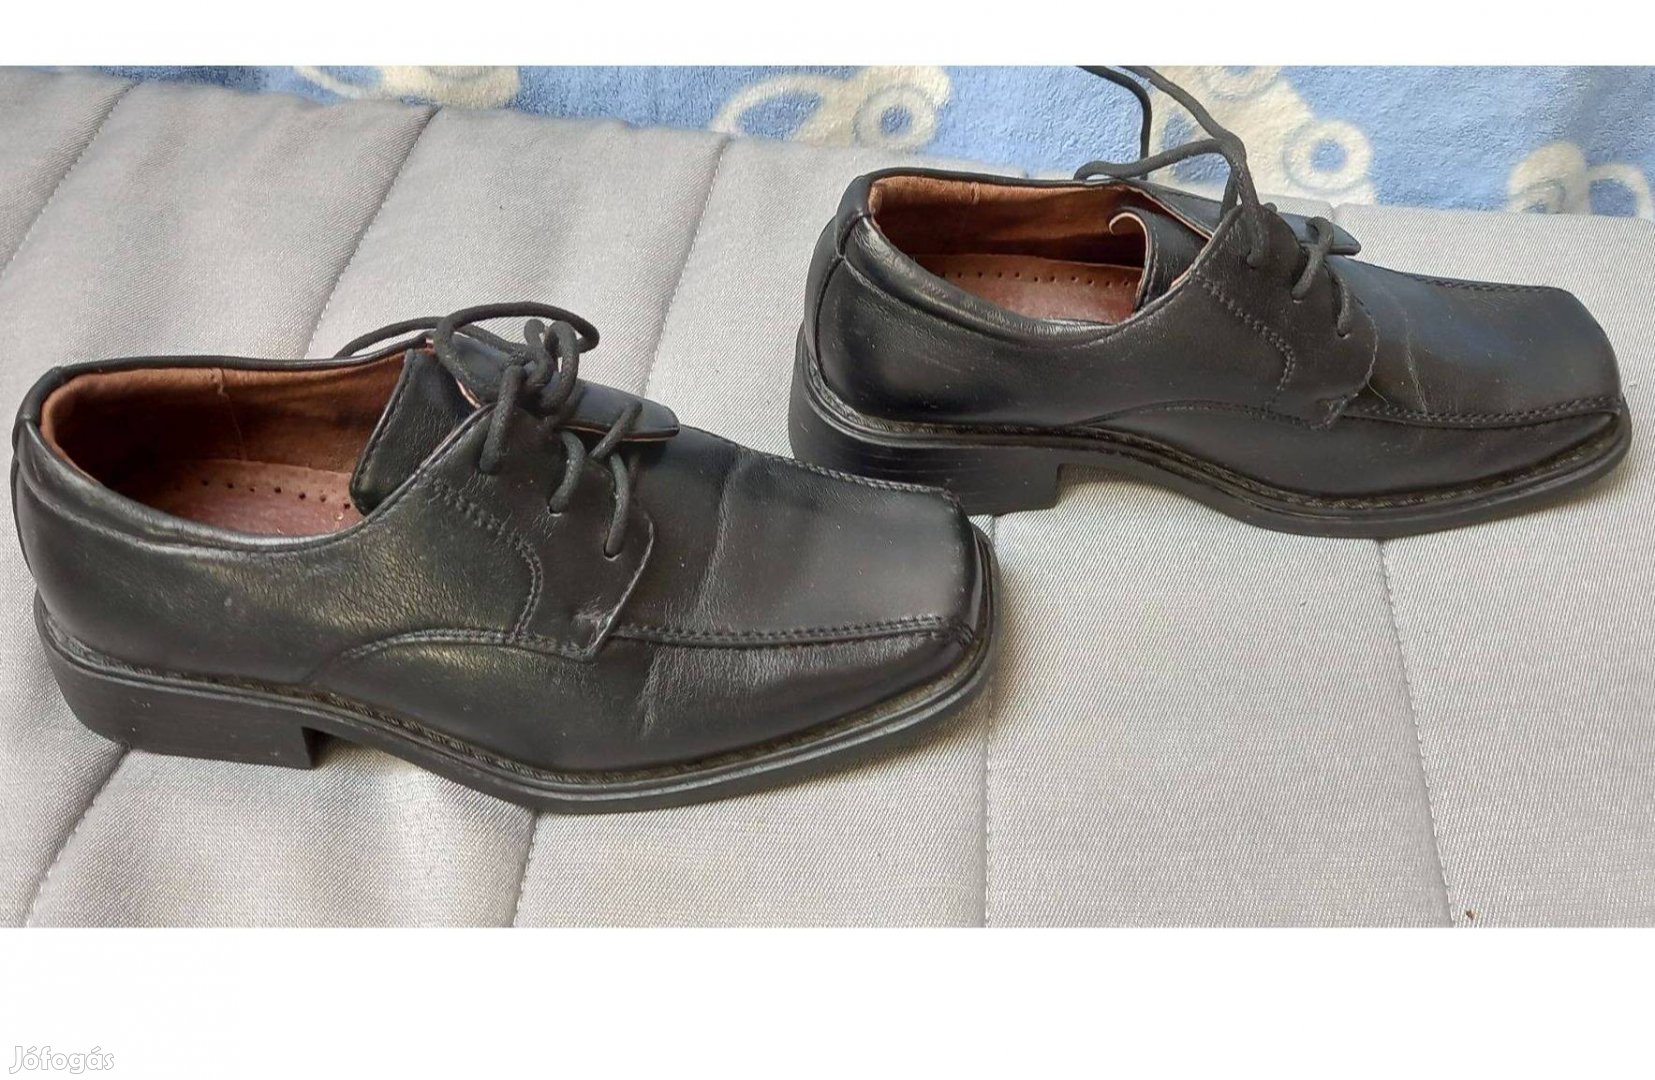 Kisfiú fekete alkalmi cipő 28-as szép állapotban